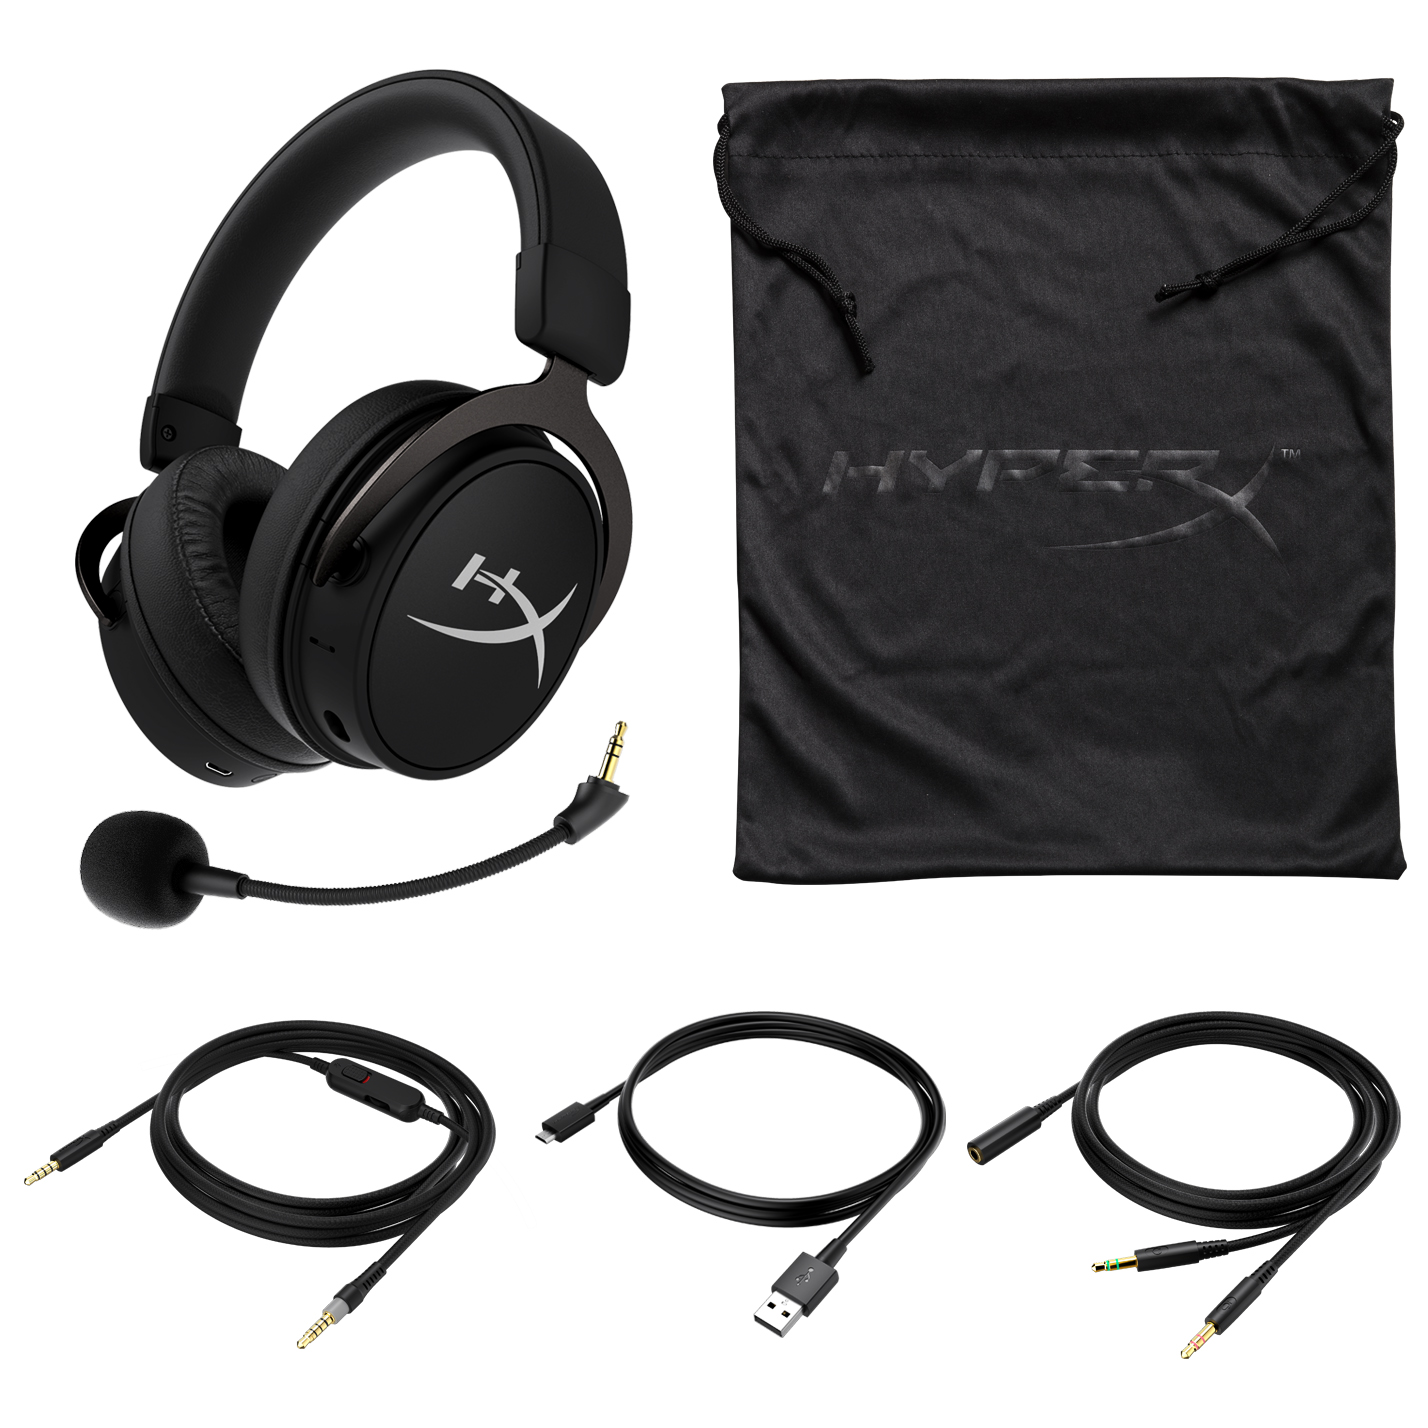 Kartrider Rush Hyperx Headset Raffle Onrpg - black headphones roblox warlocks